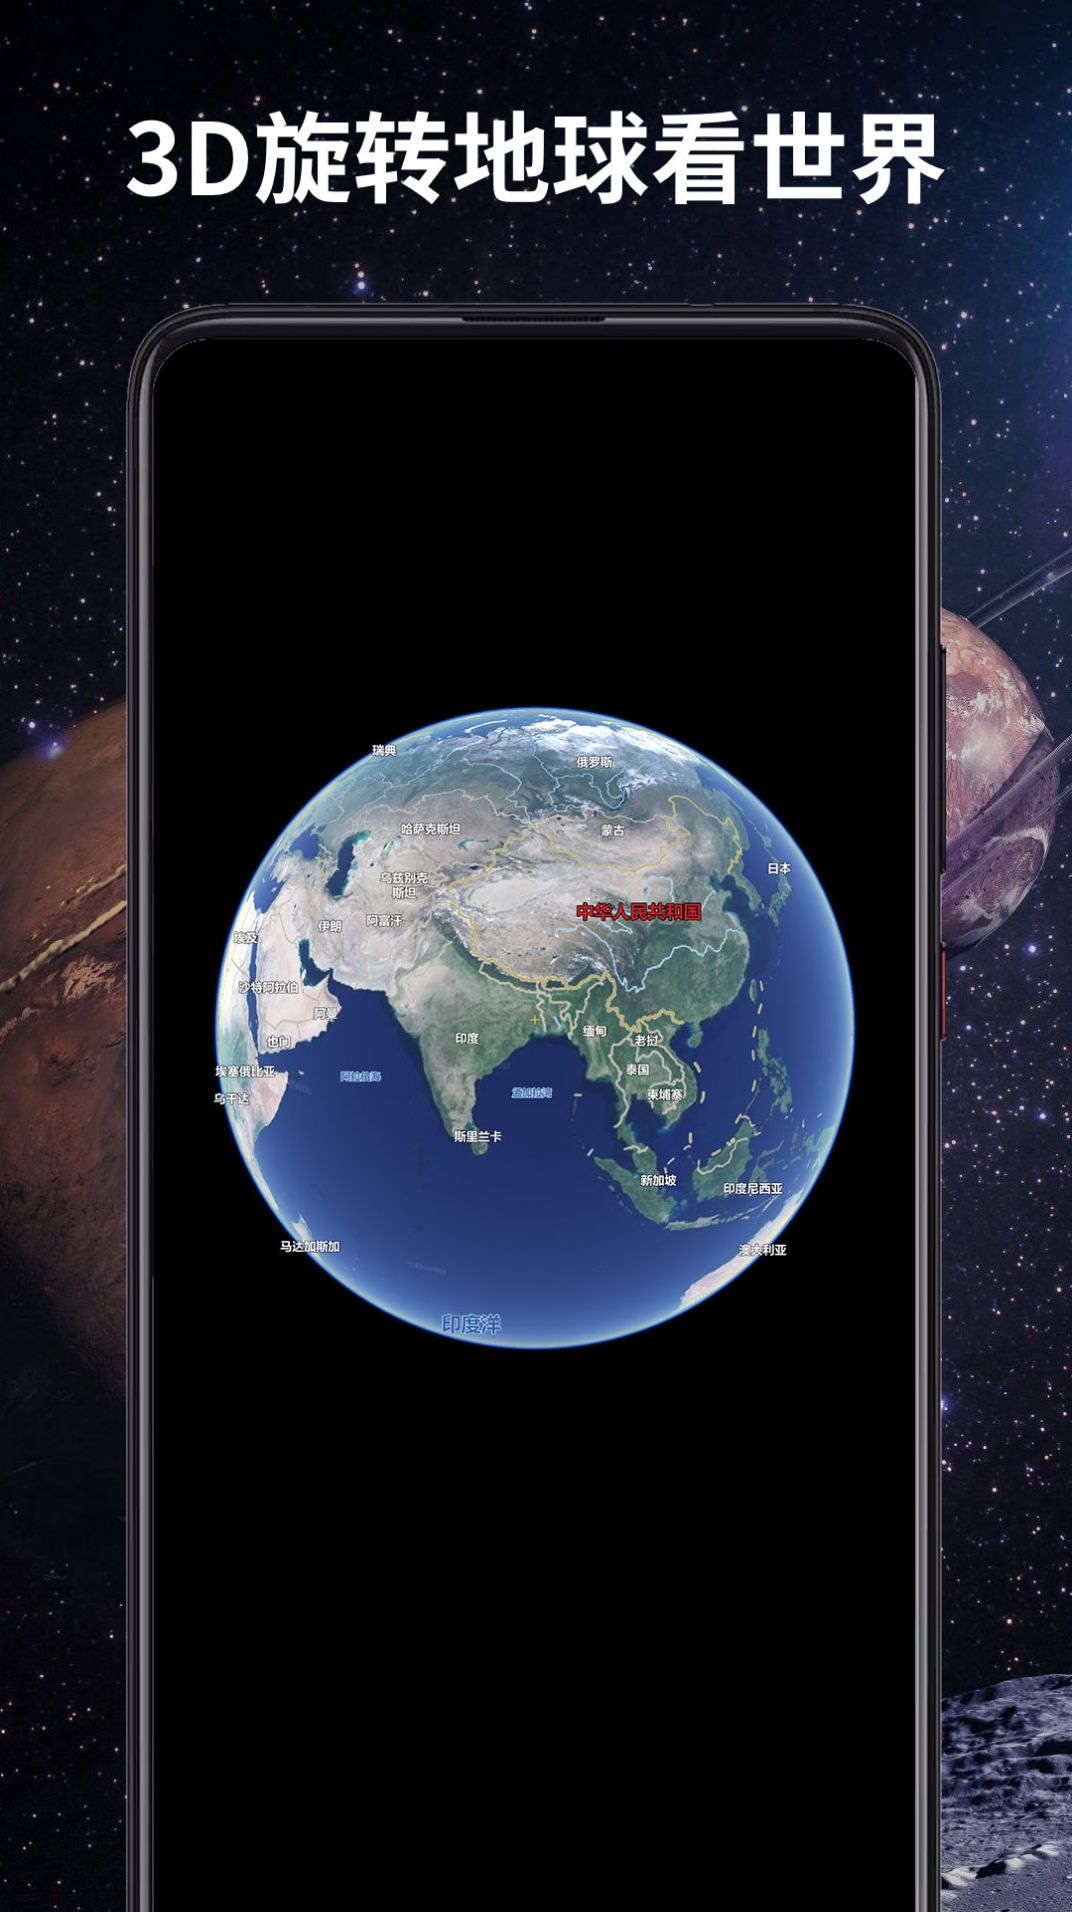 3D全景卫星导航软件手机版